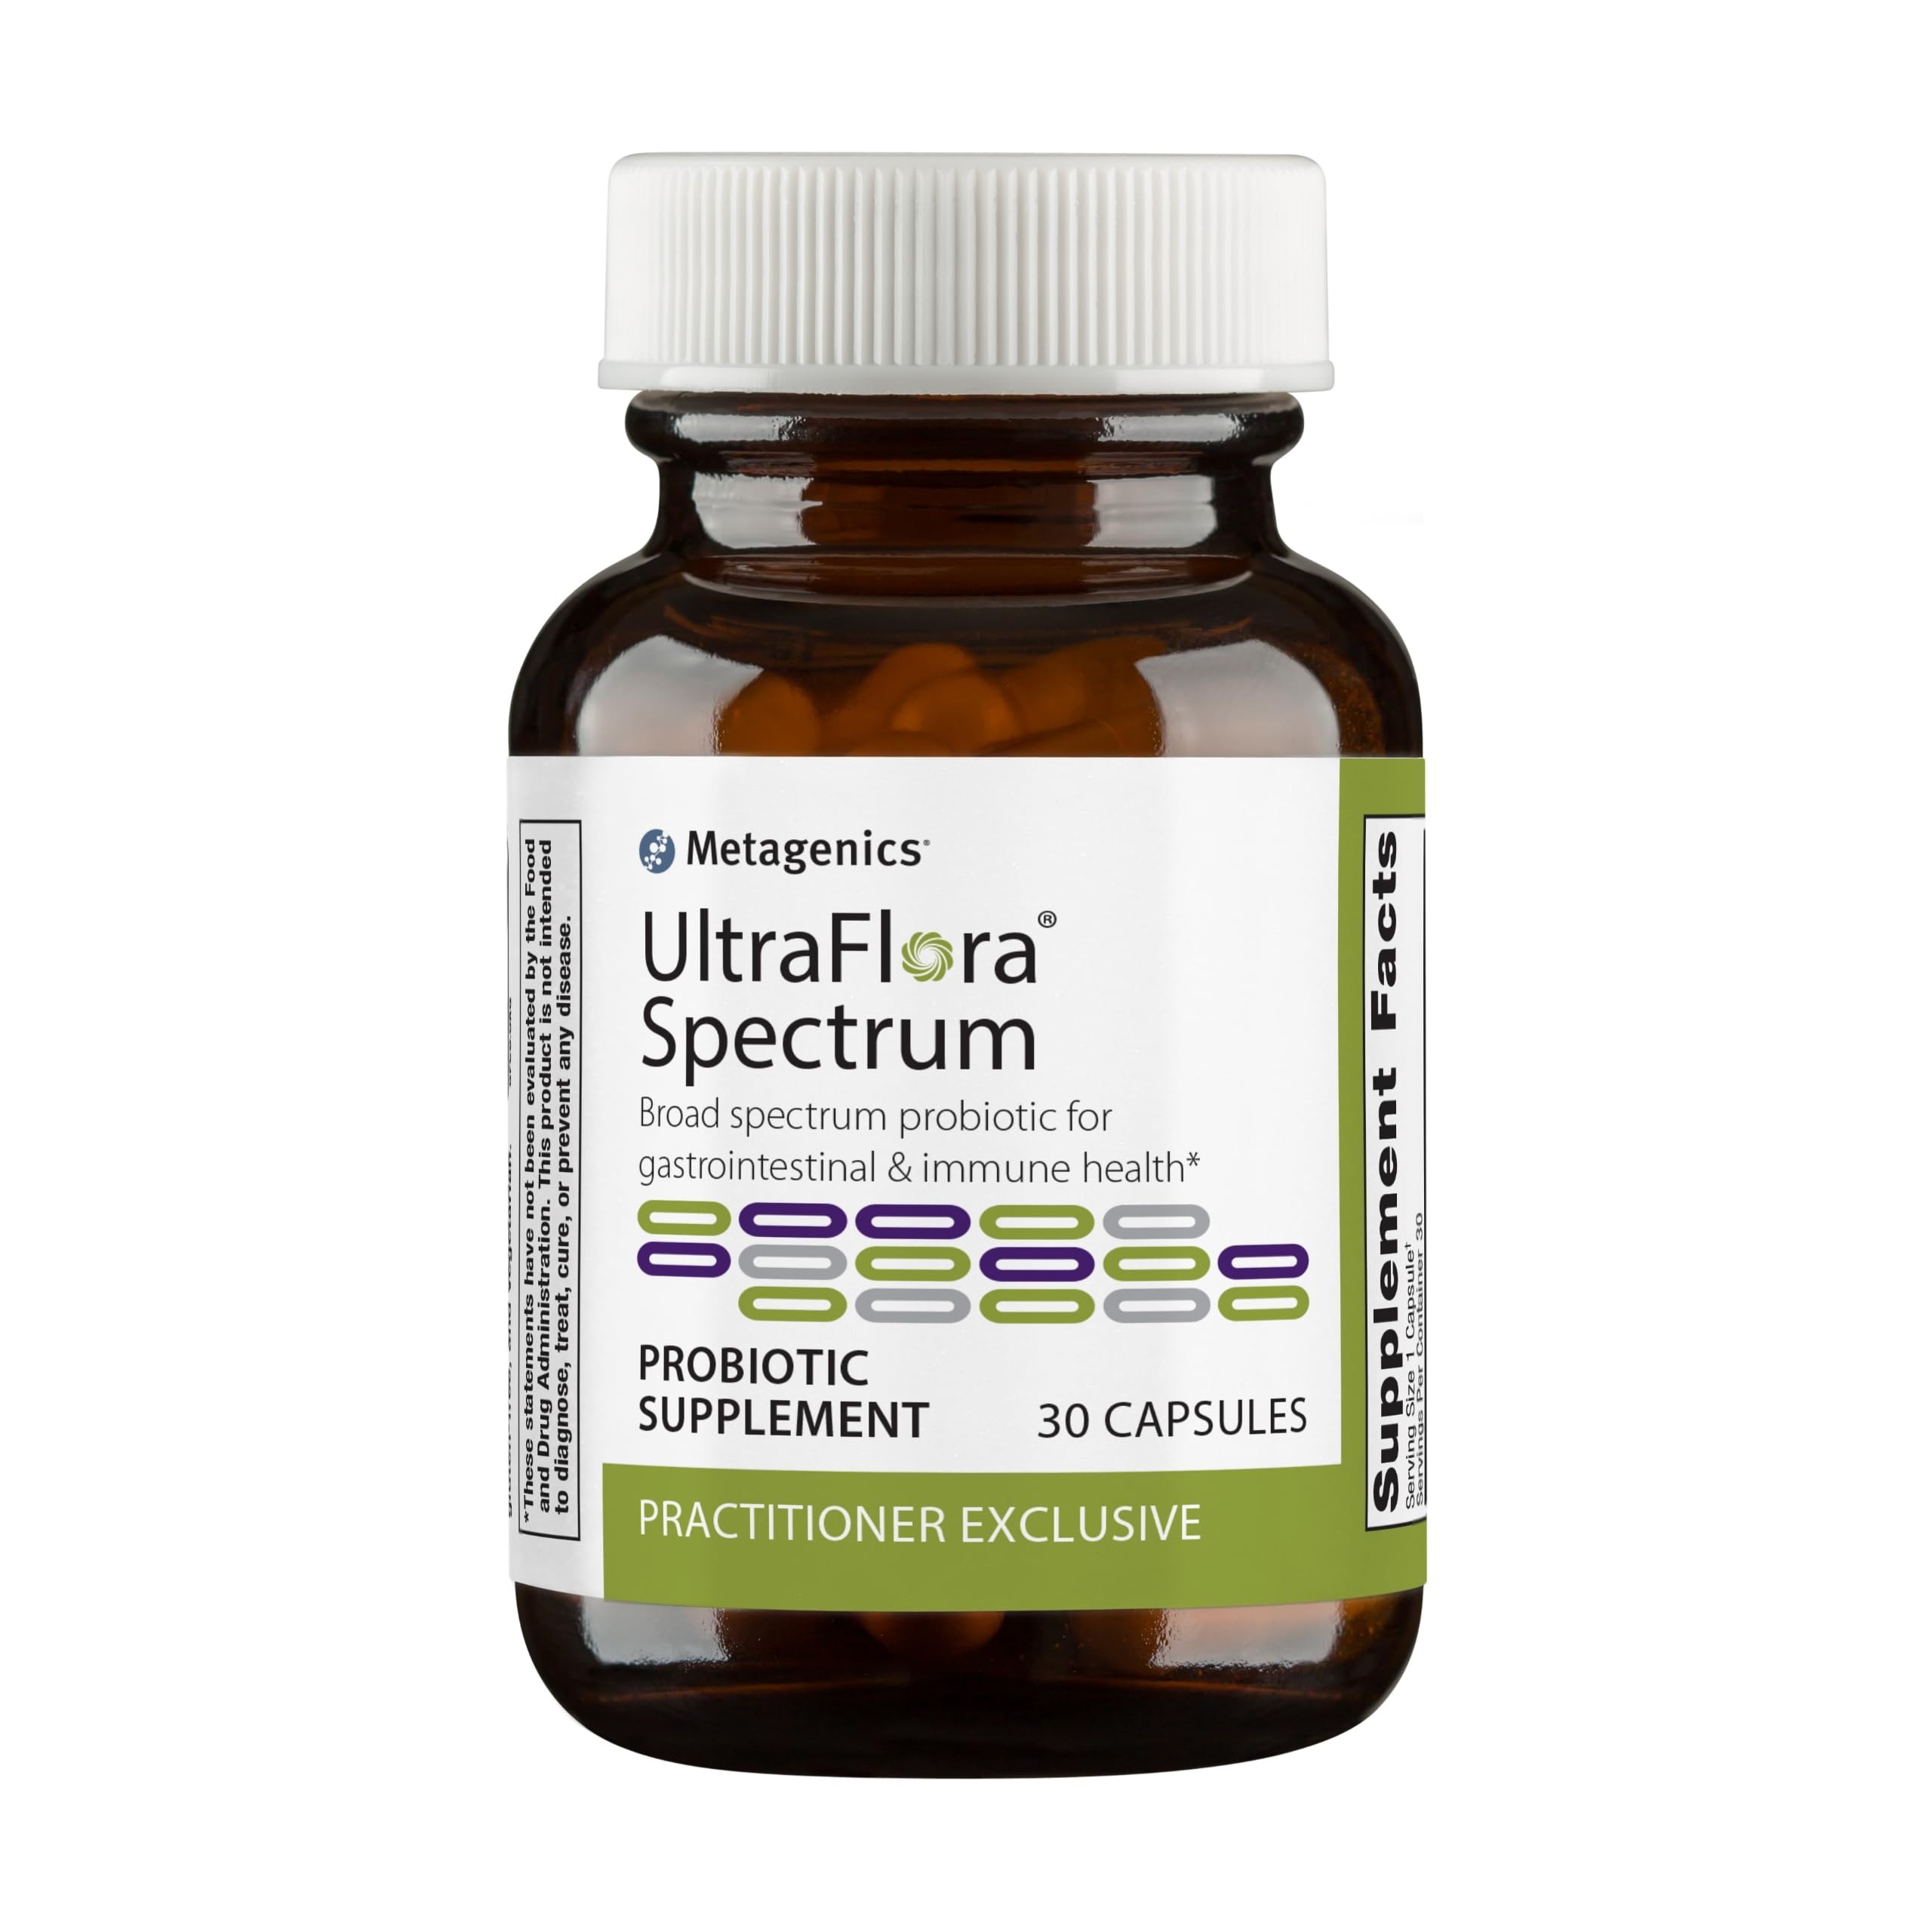 Metagenics UltraFlora Spectrum Digestive & Immune Health - 30 Capsules